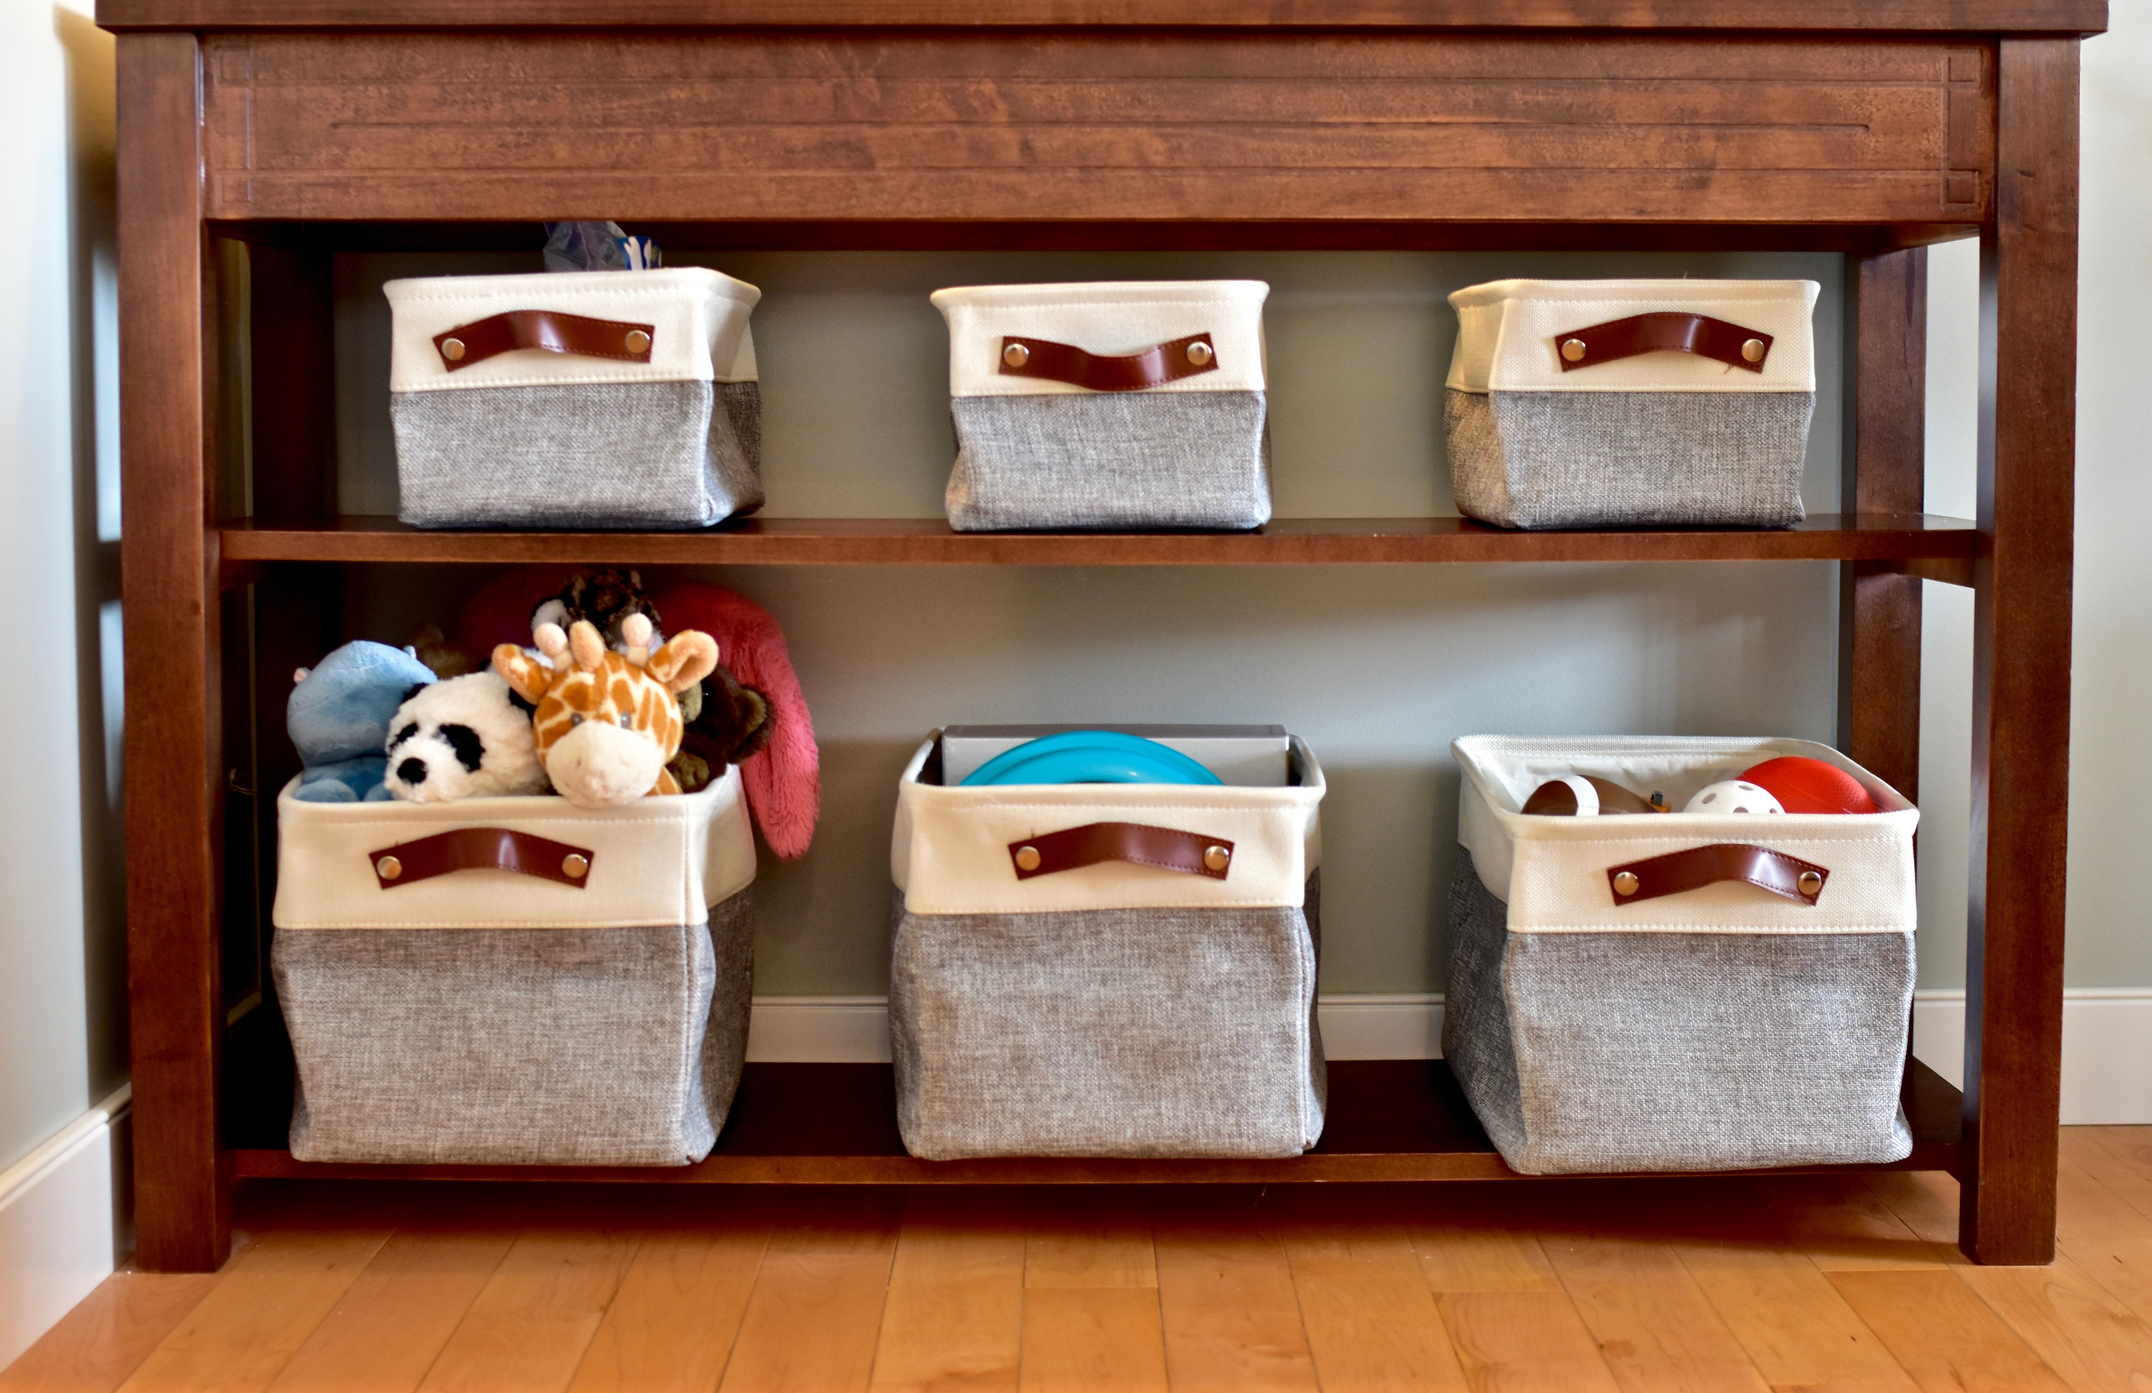 Imagem de cestos organizadores de tecido em uma estantes.